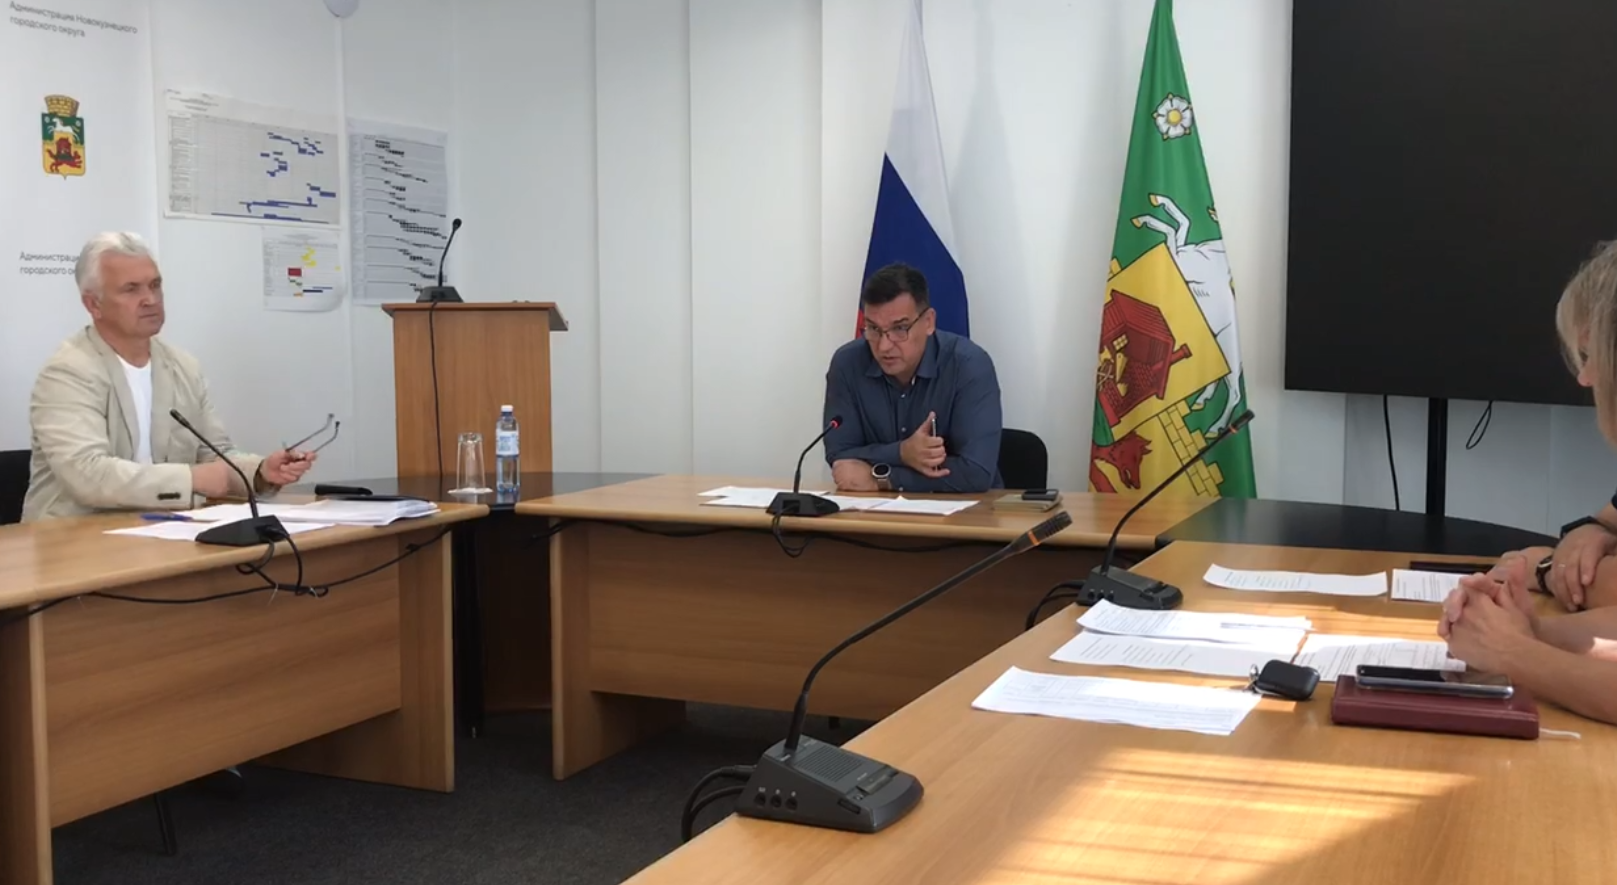 Неудовлетворительной мэр Новокузнецка назвал работу городского комитета образования